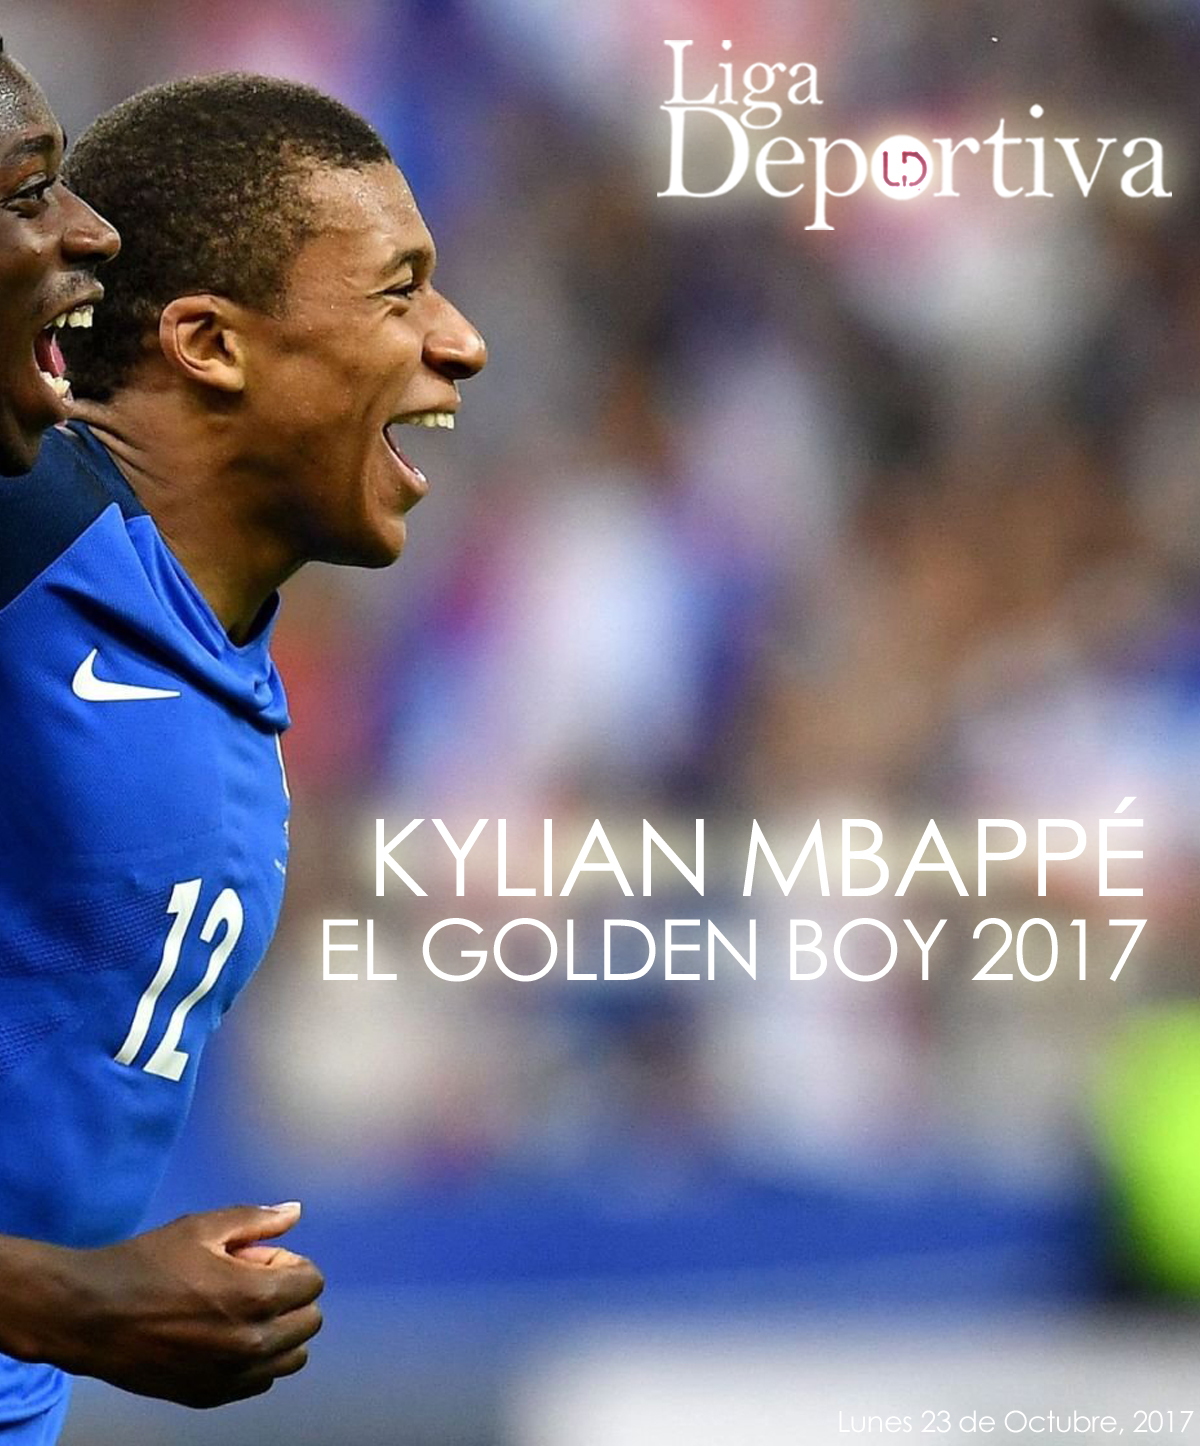 Kylian Mbappé elegido el Golden Boy 2017 